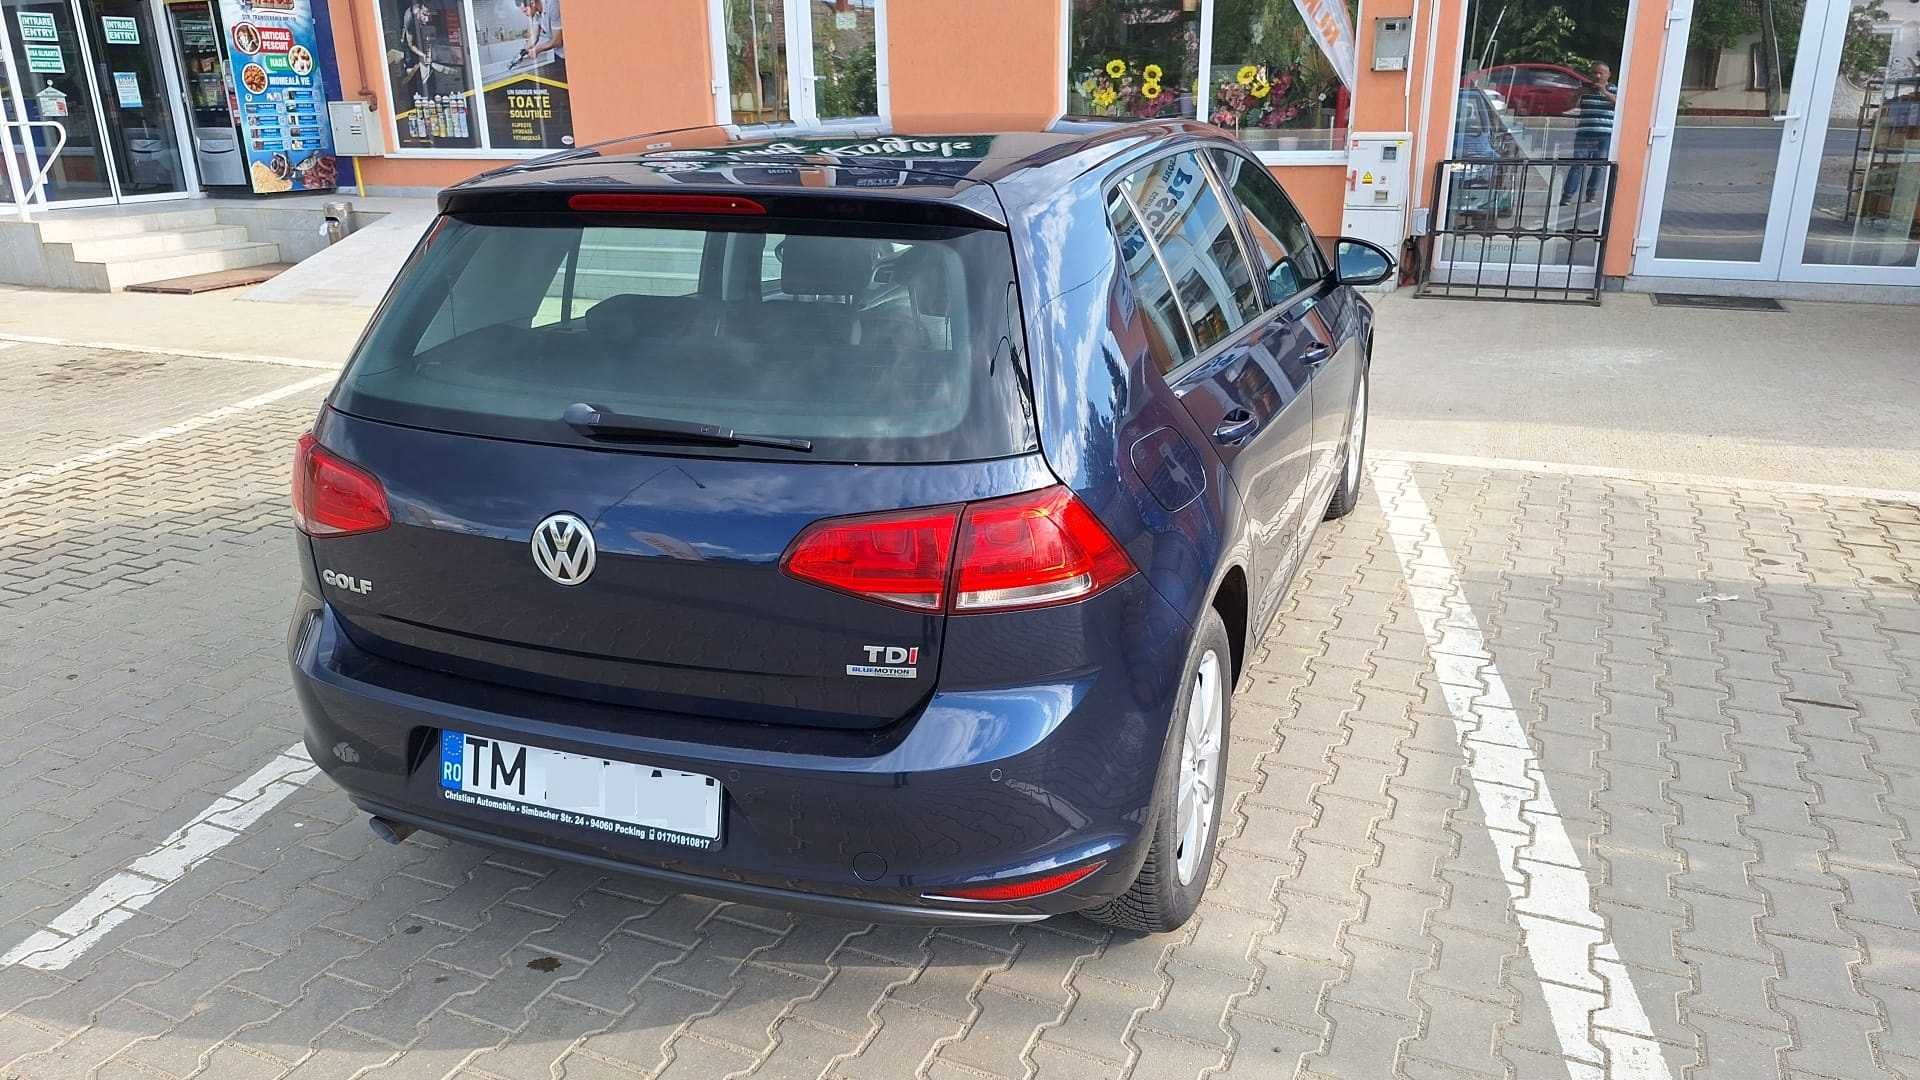 Volkswagen Golf 7 hatchback